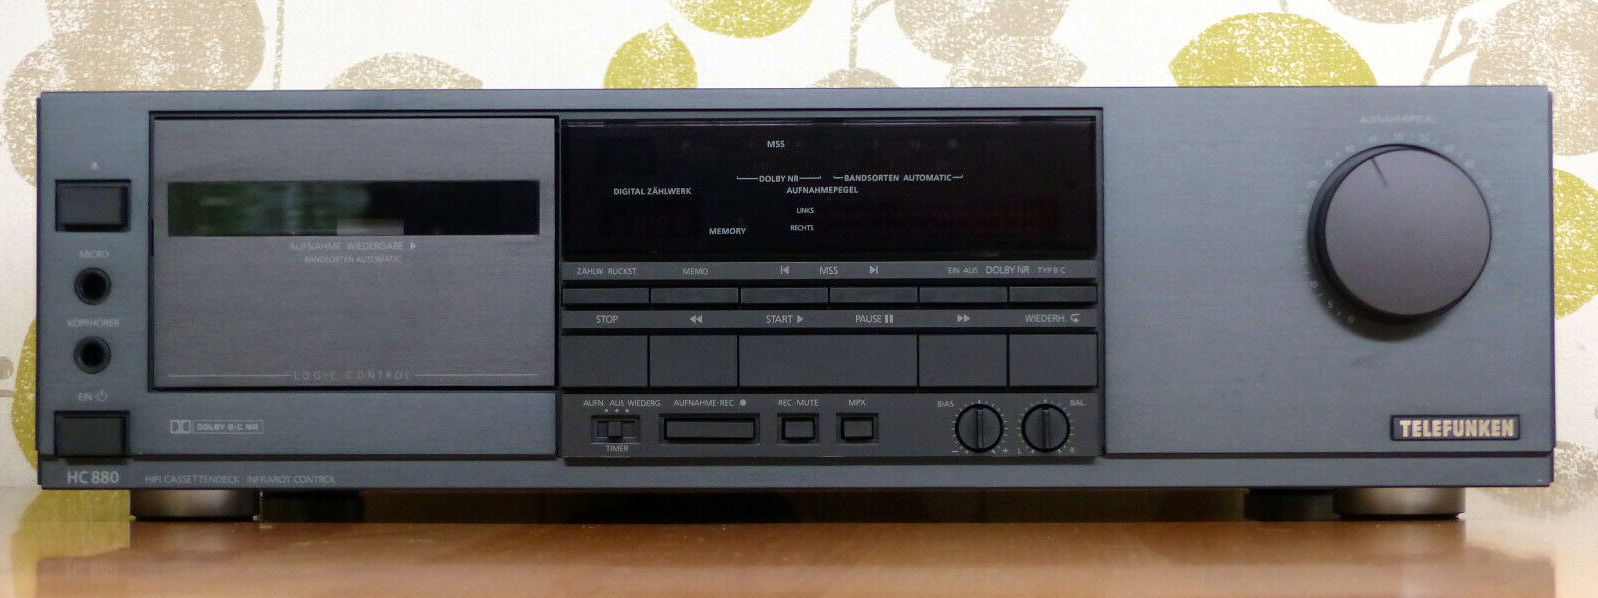 Telefunken HC-880-1991.jpg